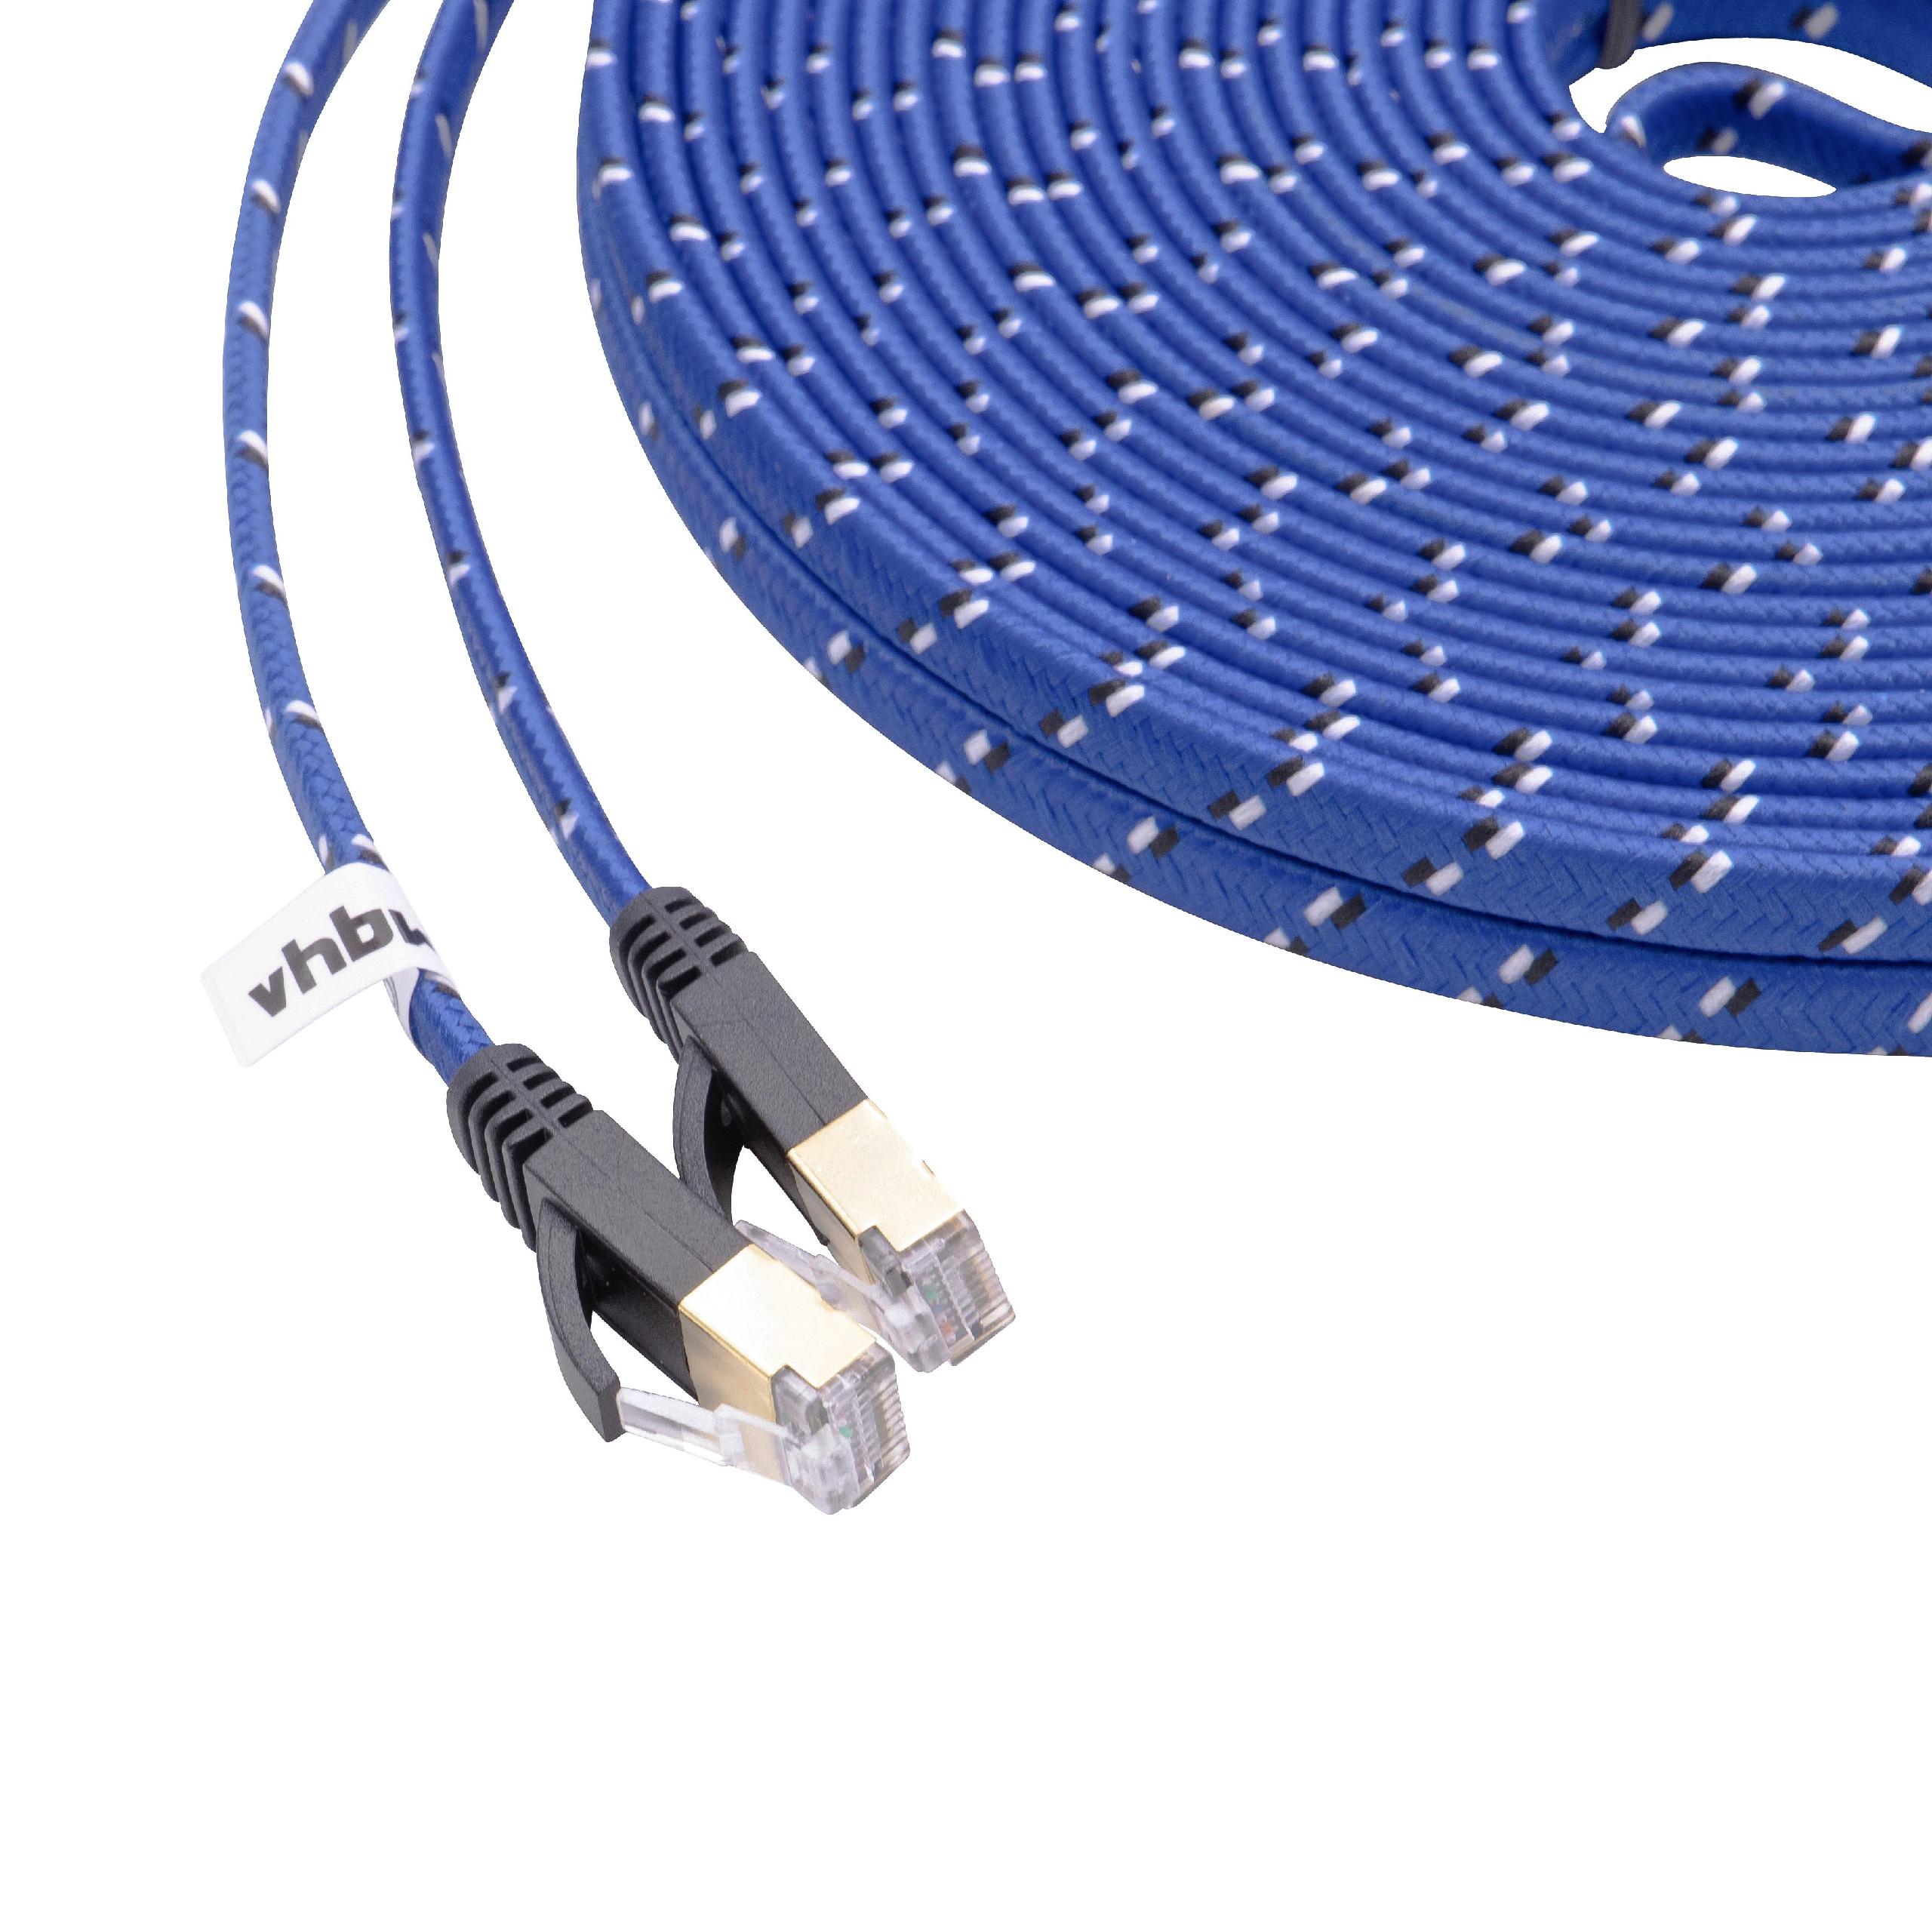 Cable de red de Ethernet, LAN, cable patch Cat7 15m azul cable plano de tendido